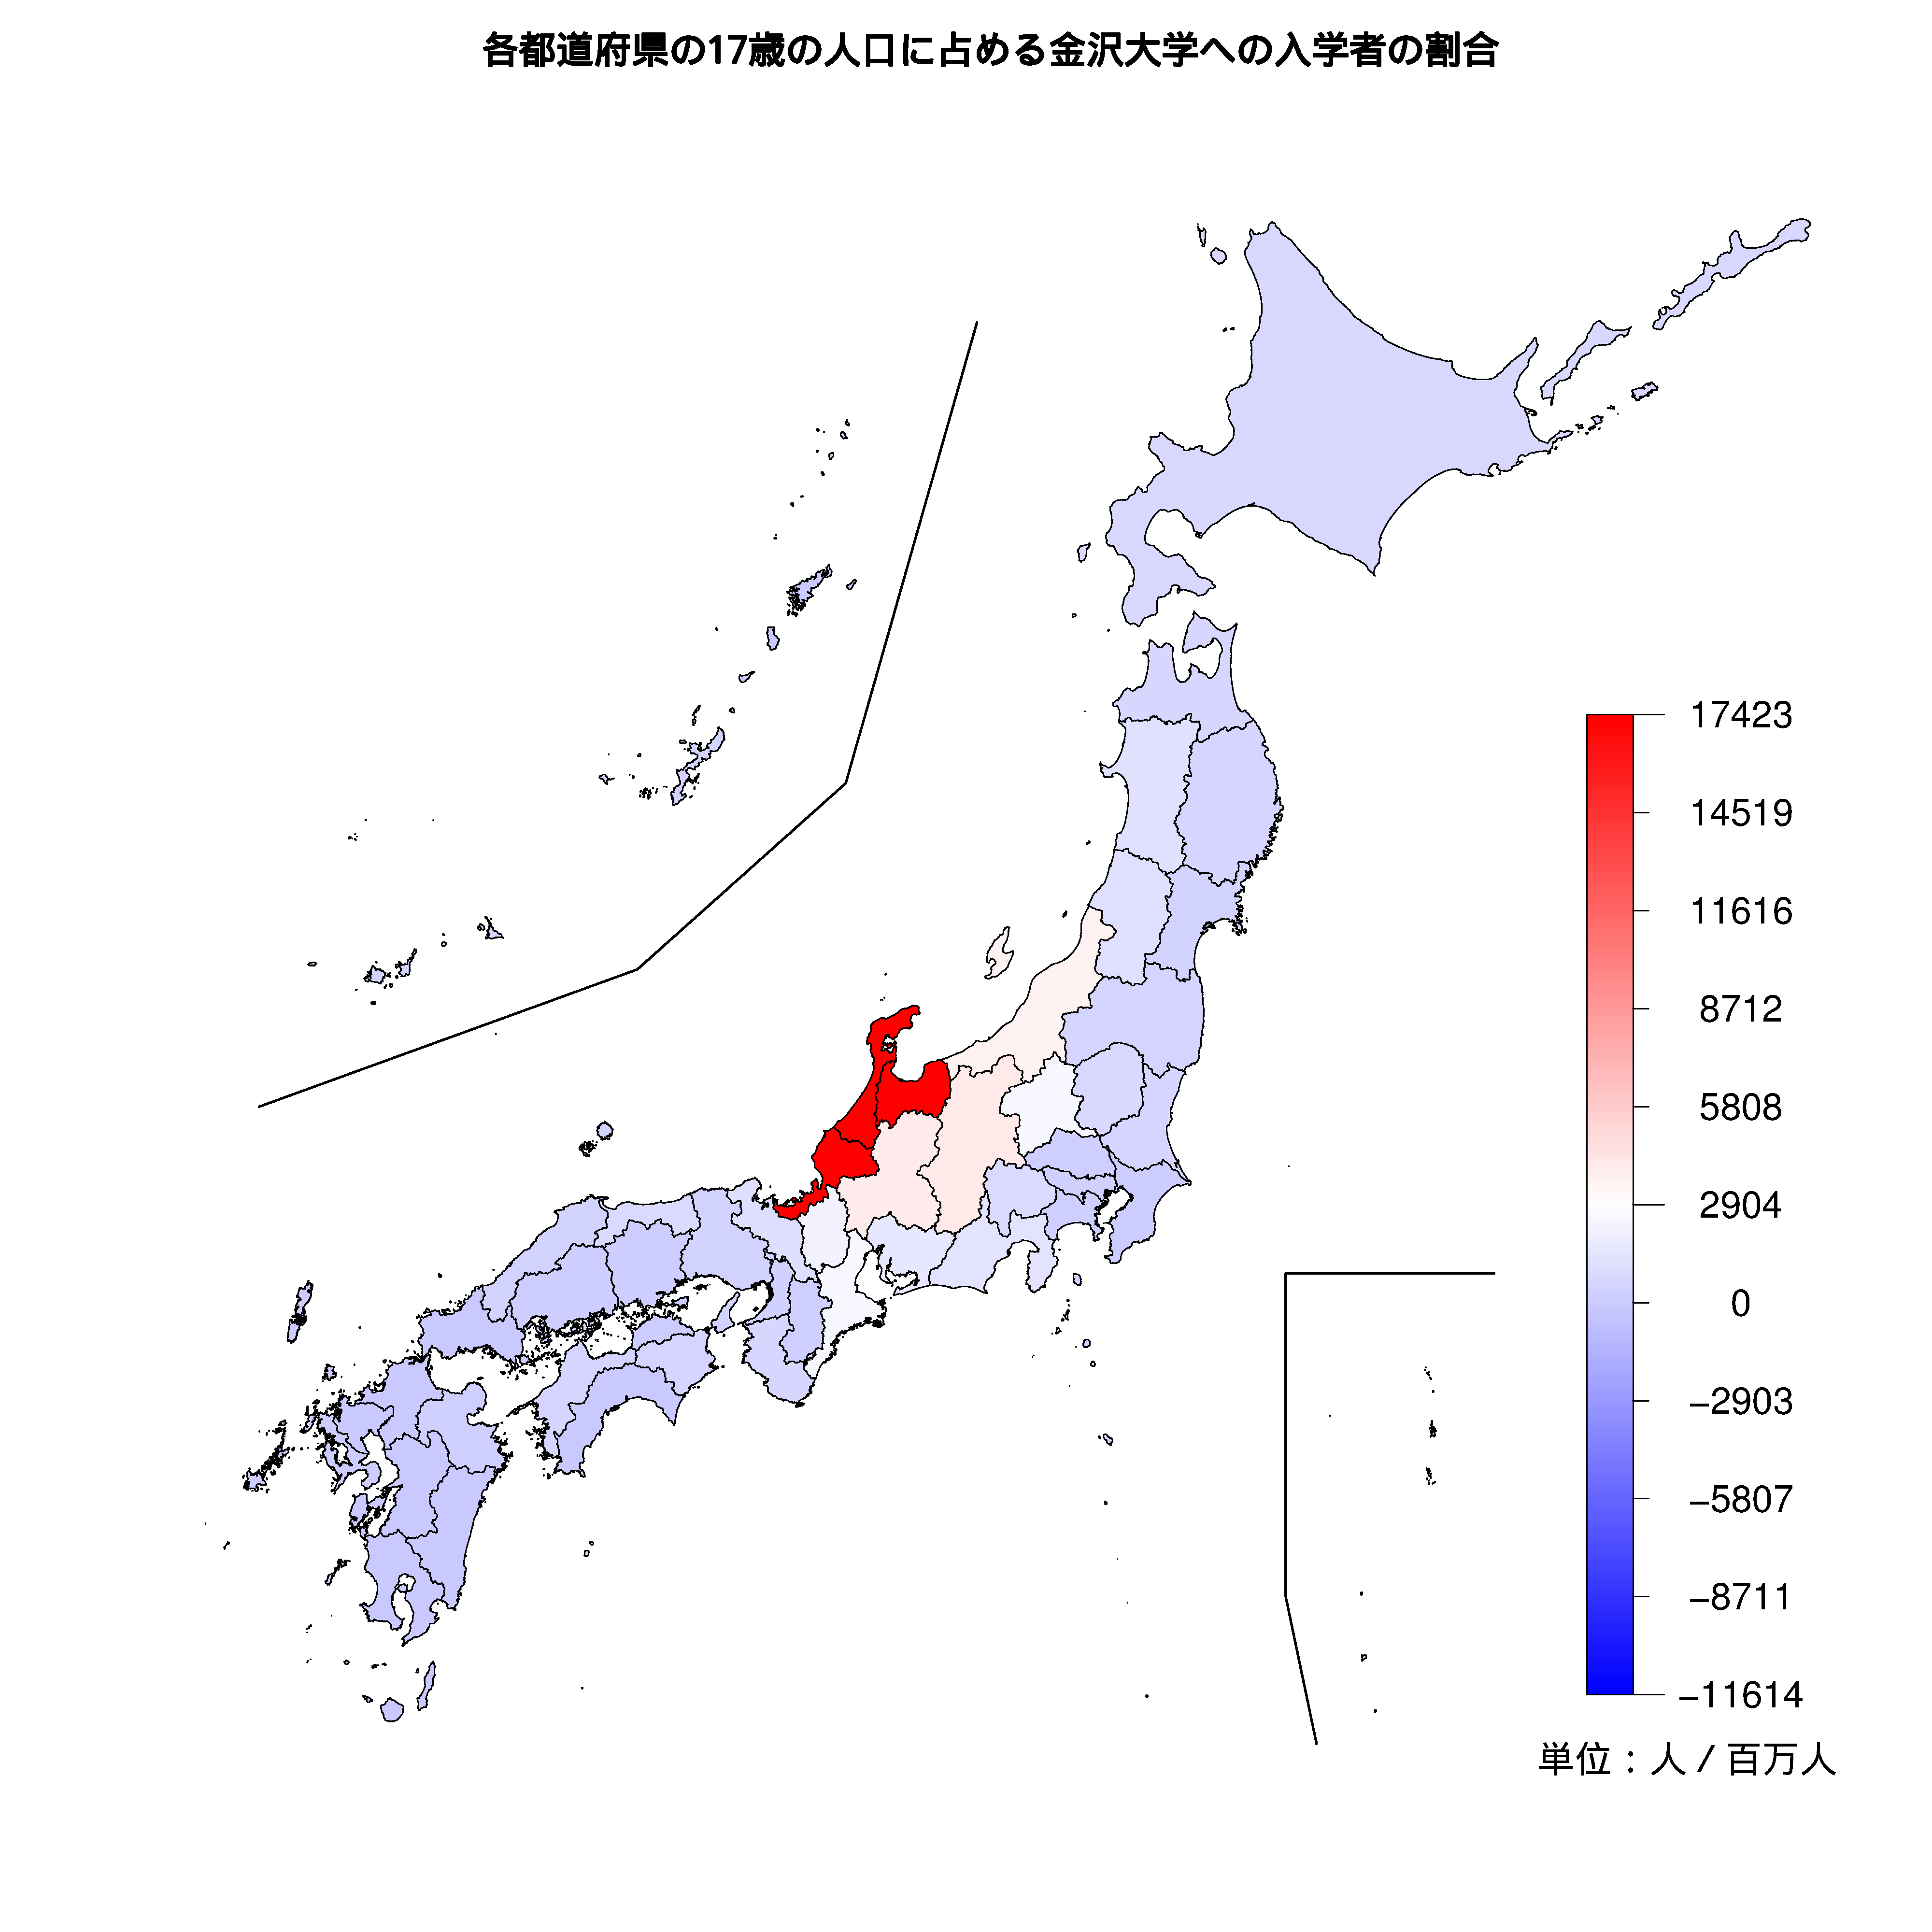 金沢大学への入学者が多い都道府県の色分け地図